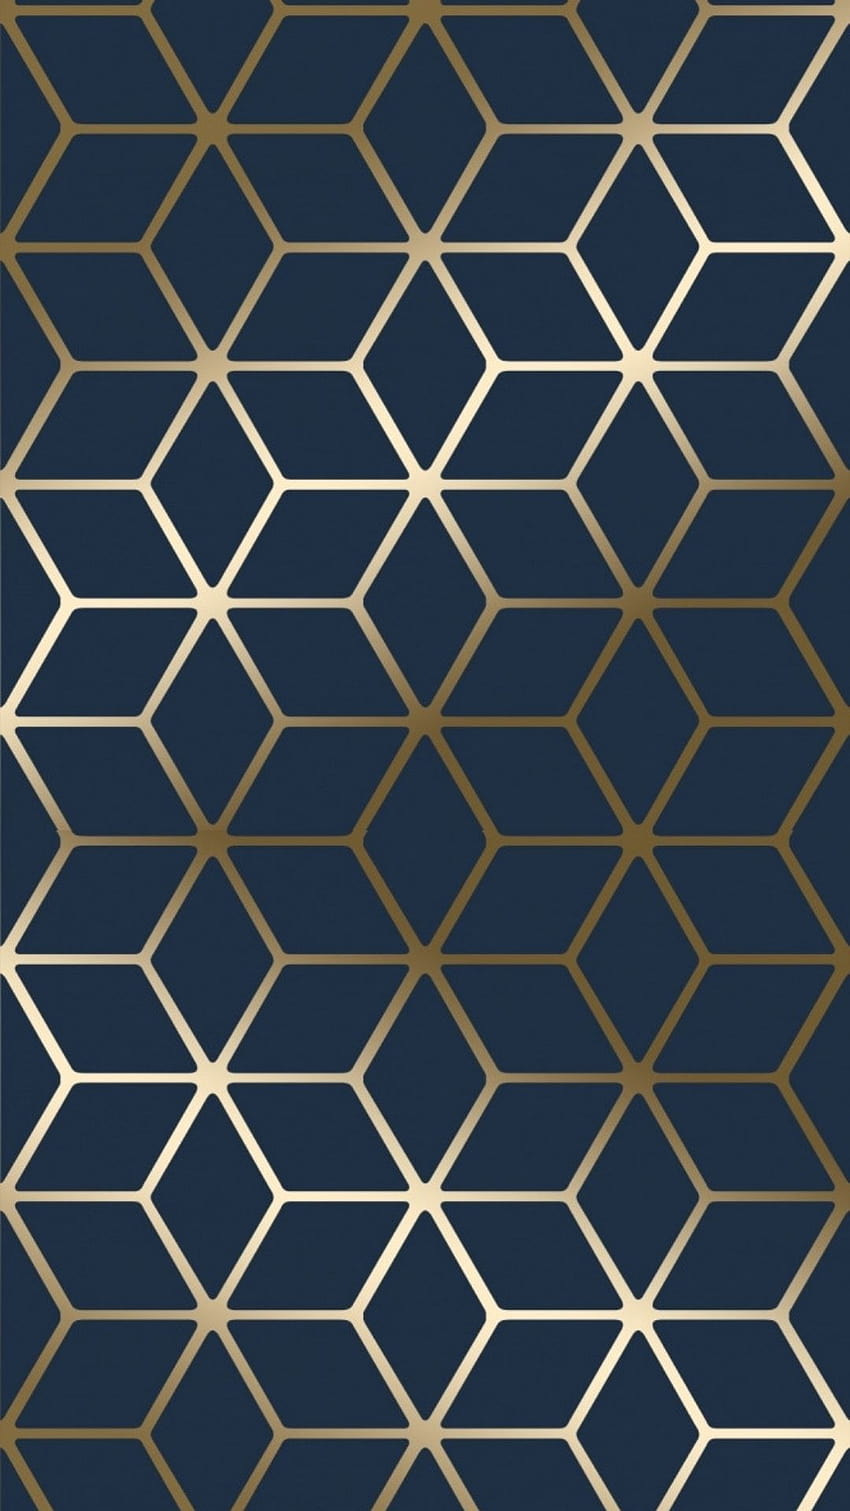 Cubic Shimmer Metallic Navy Blue Gold, geométrico moderno fondo de pantalla del teléfono